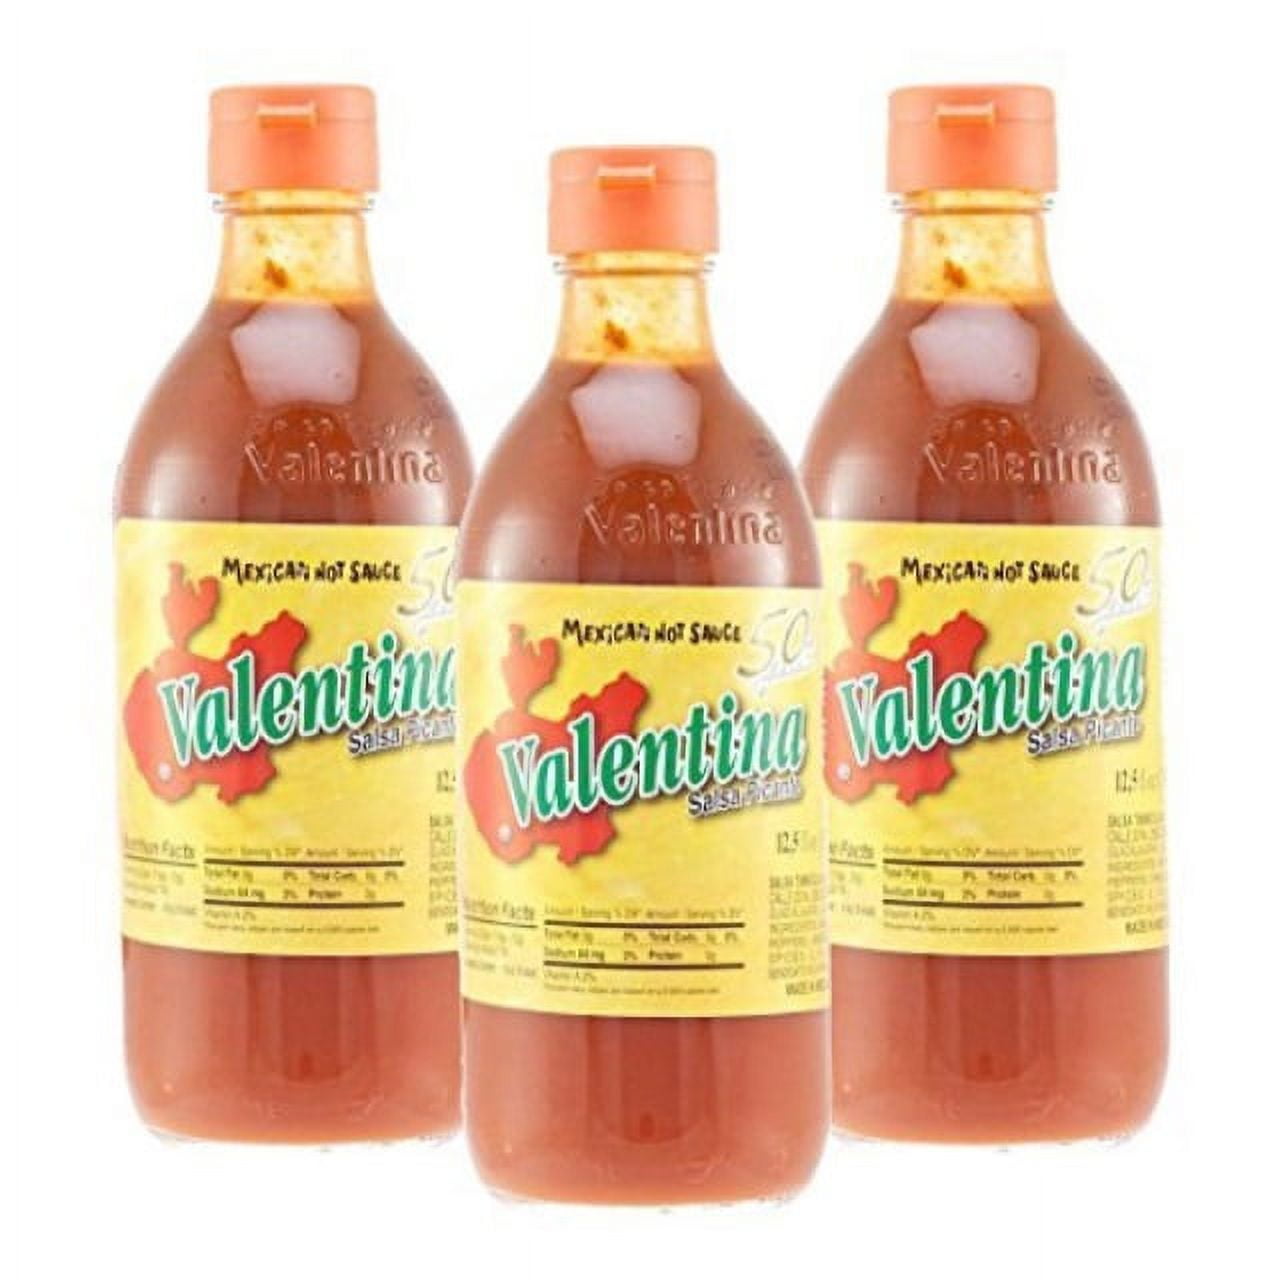 Valentina Extra Hot Mexican Hot Sauce, 34 fl oz - Mariano's